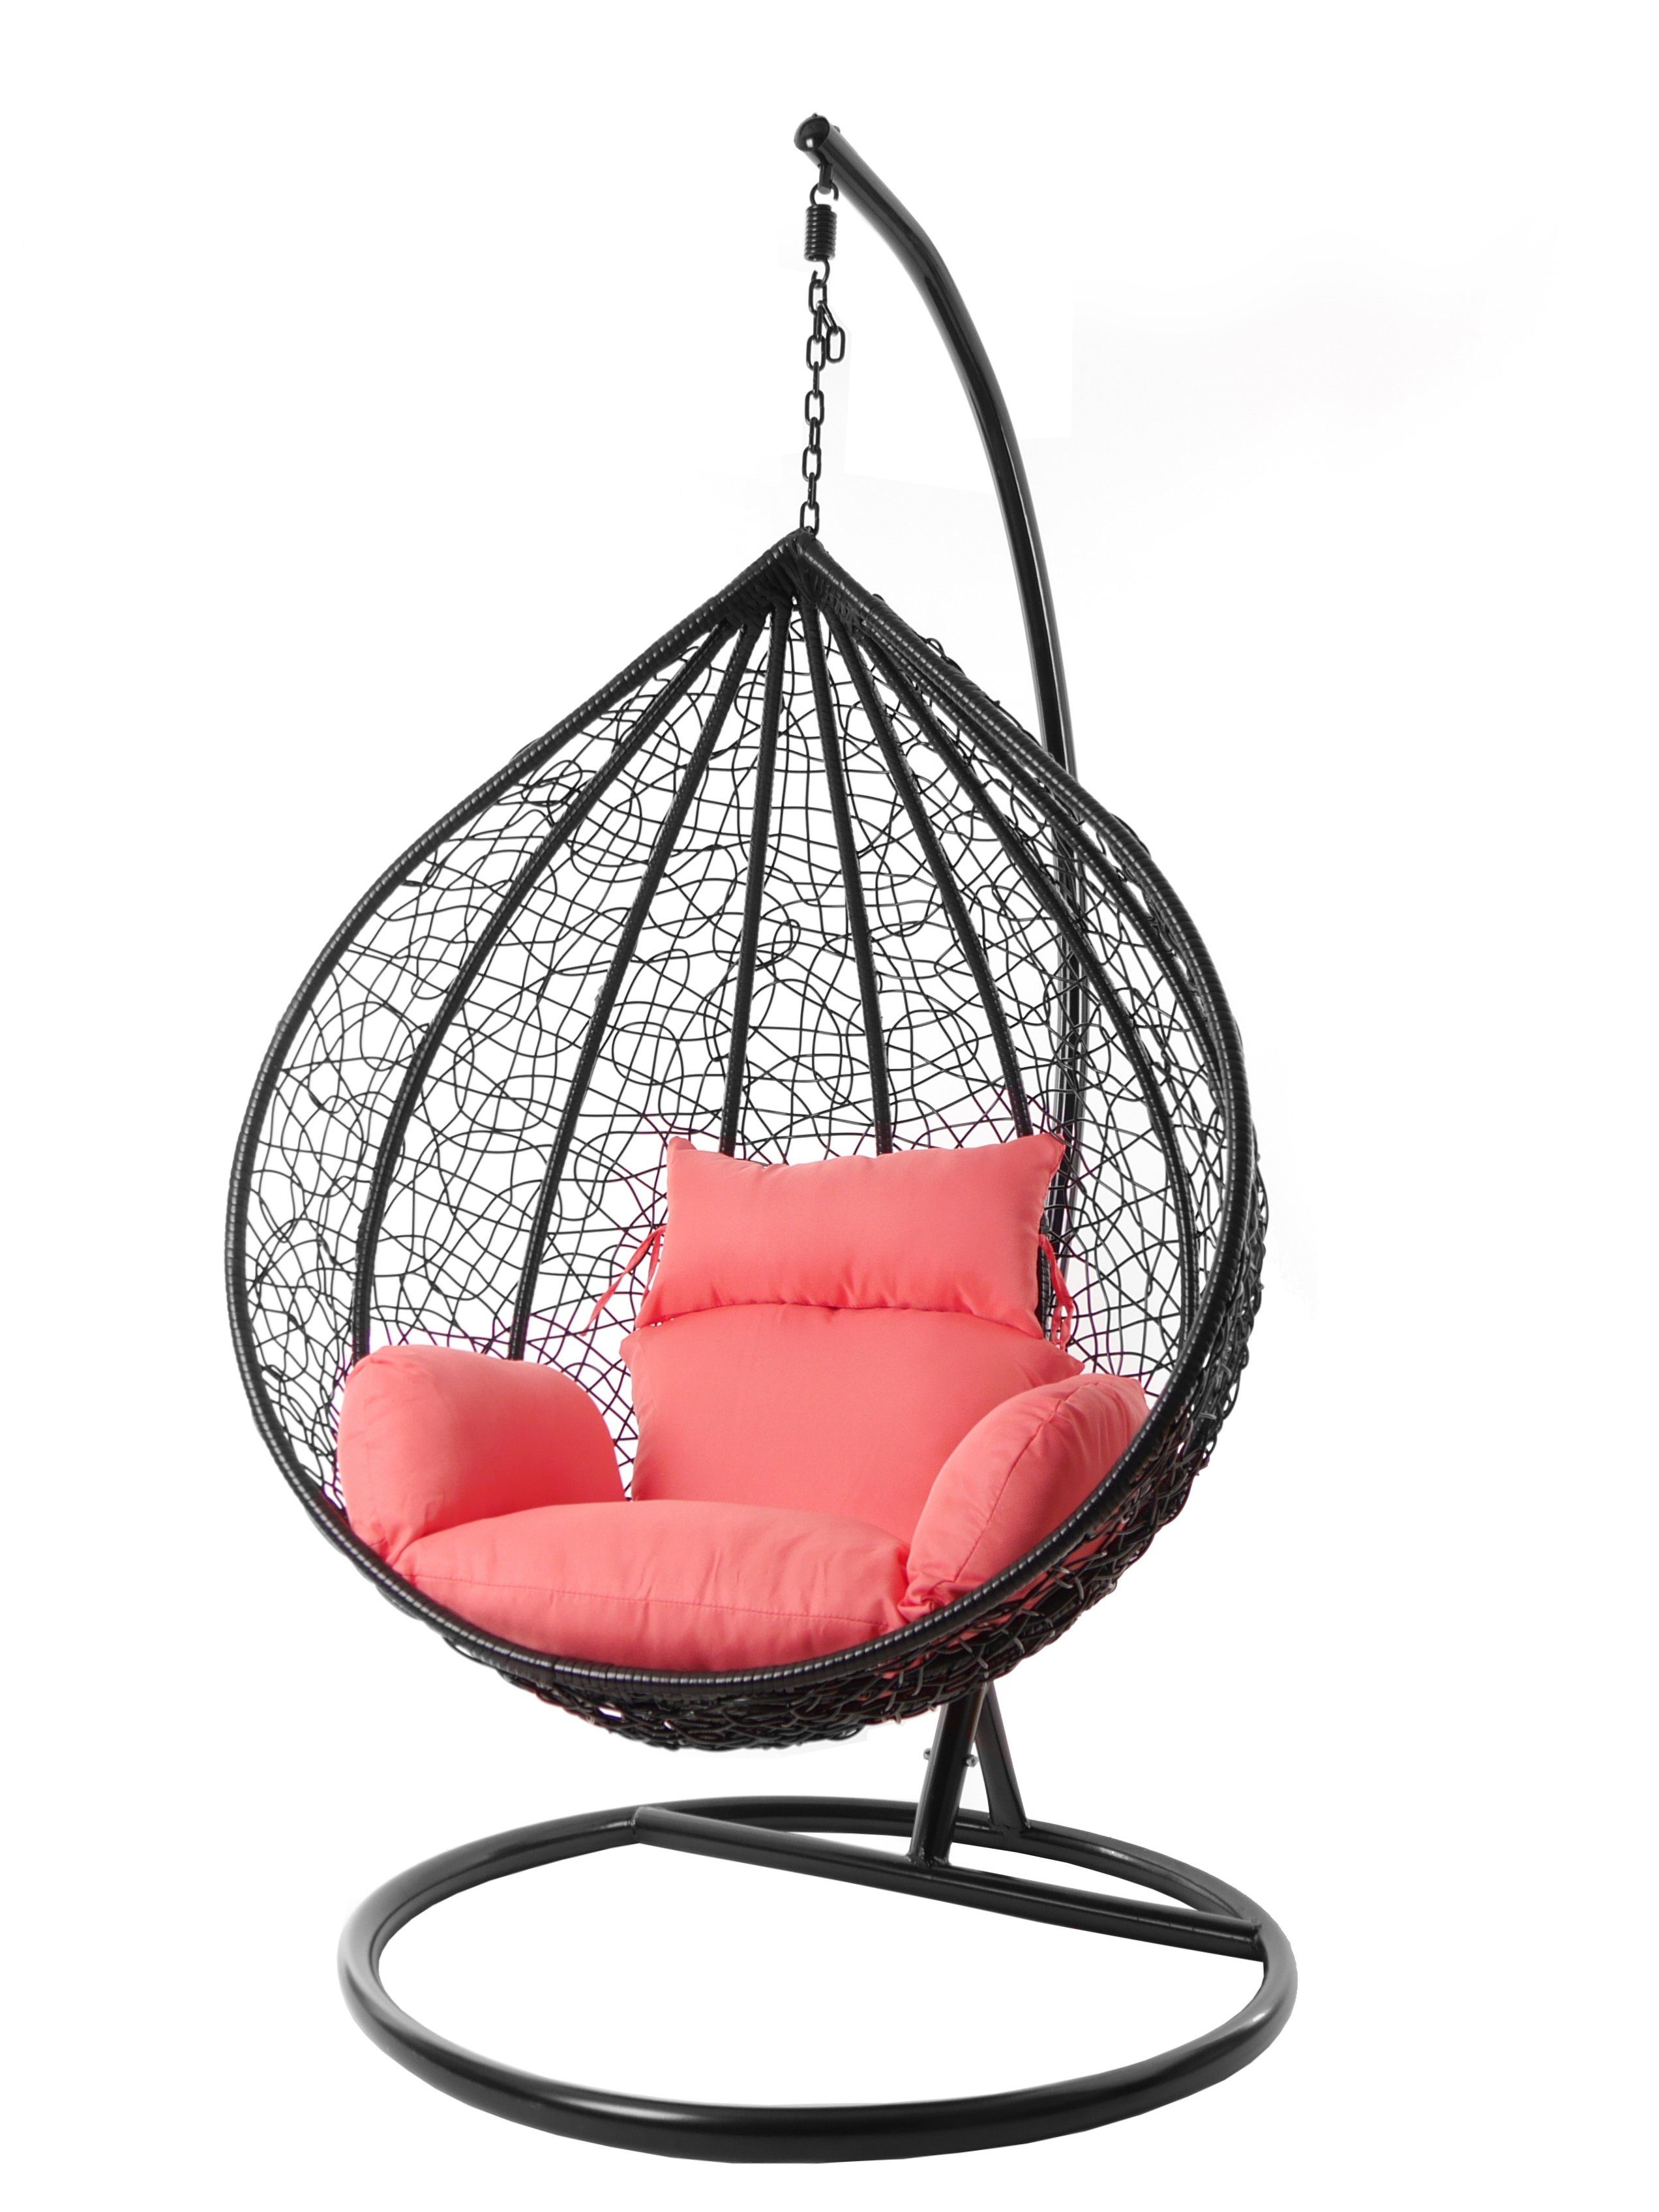 KIDEO Hängesessel Hängesessel MANACOR schwarz, XXL Swing Chair, edel, Gestell und Kissen inklusive, Nest-Kissen, verschiedene Farben coral (3400 coral)